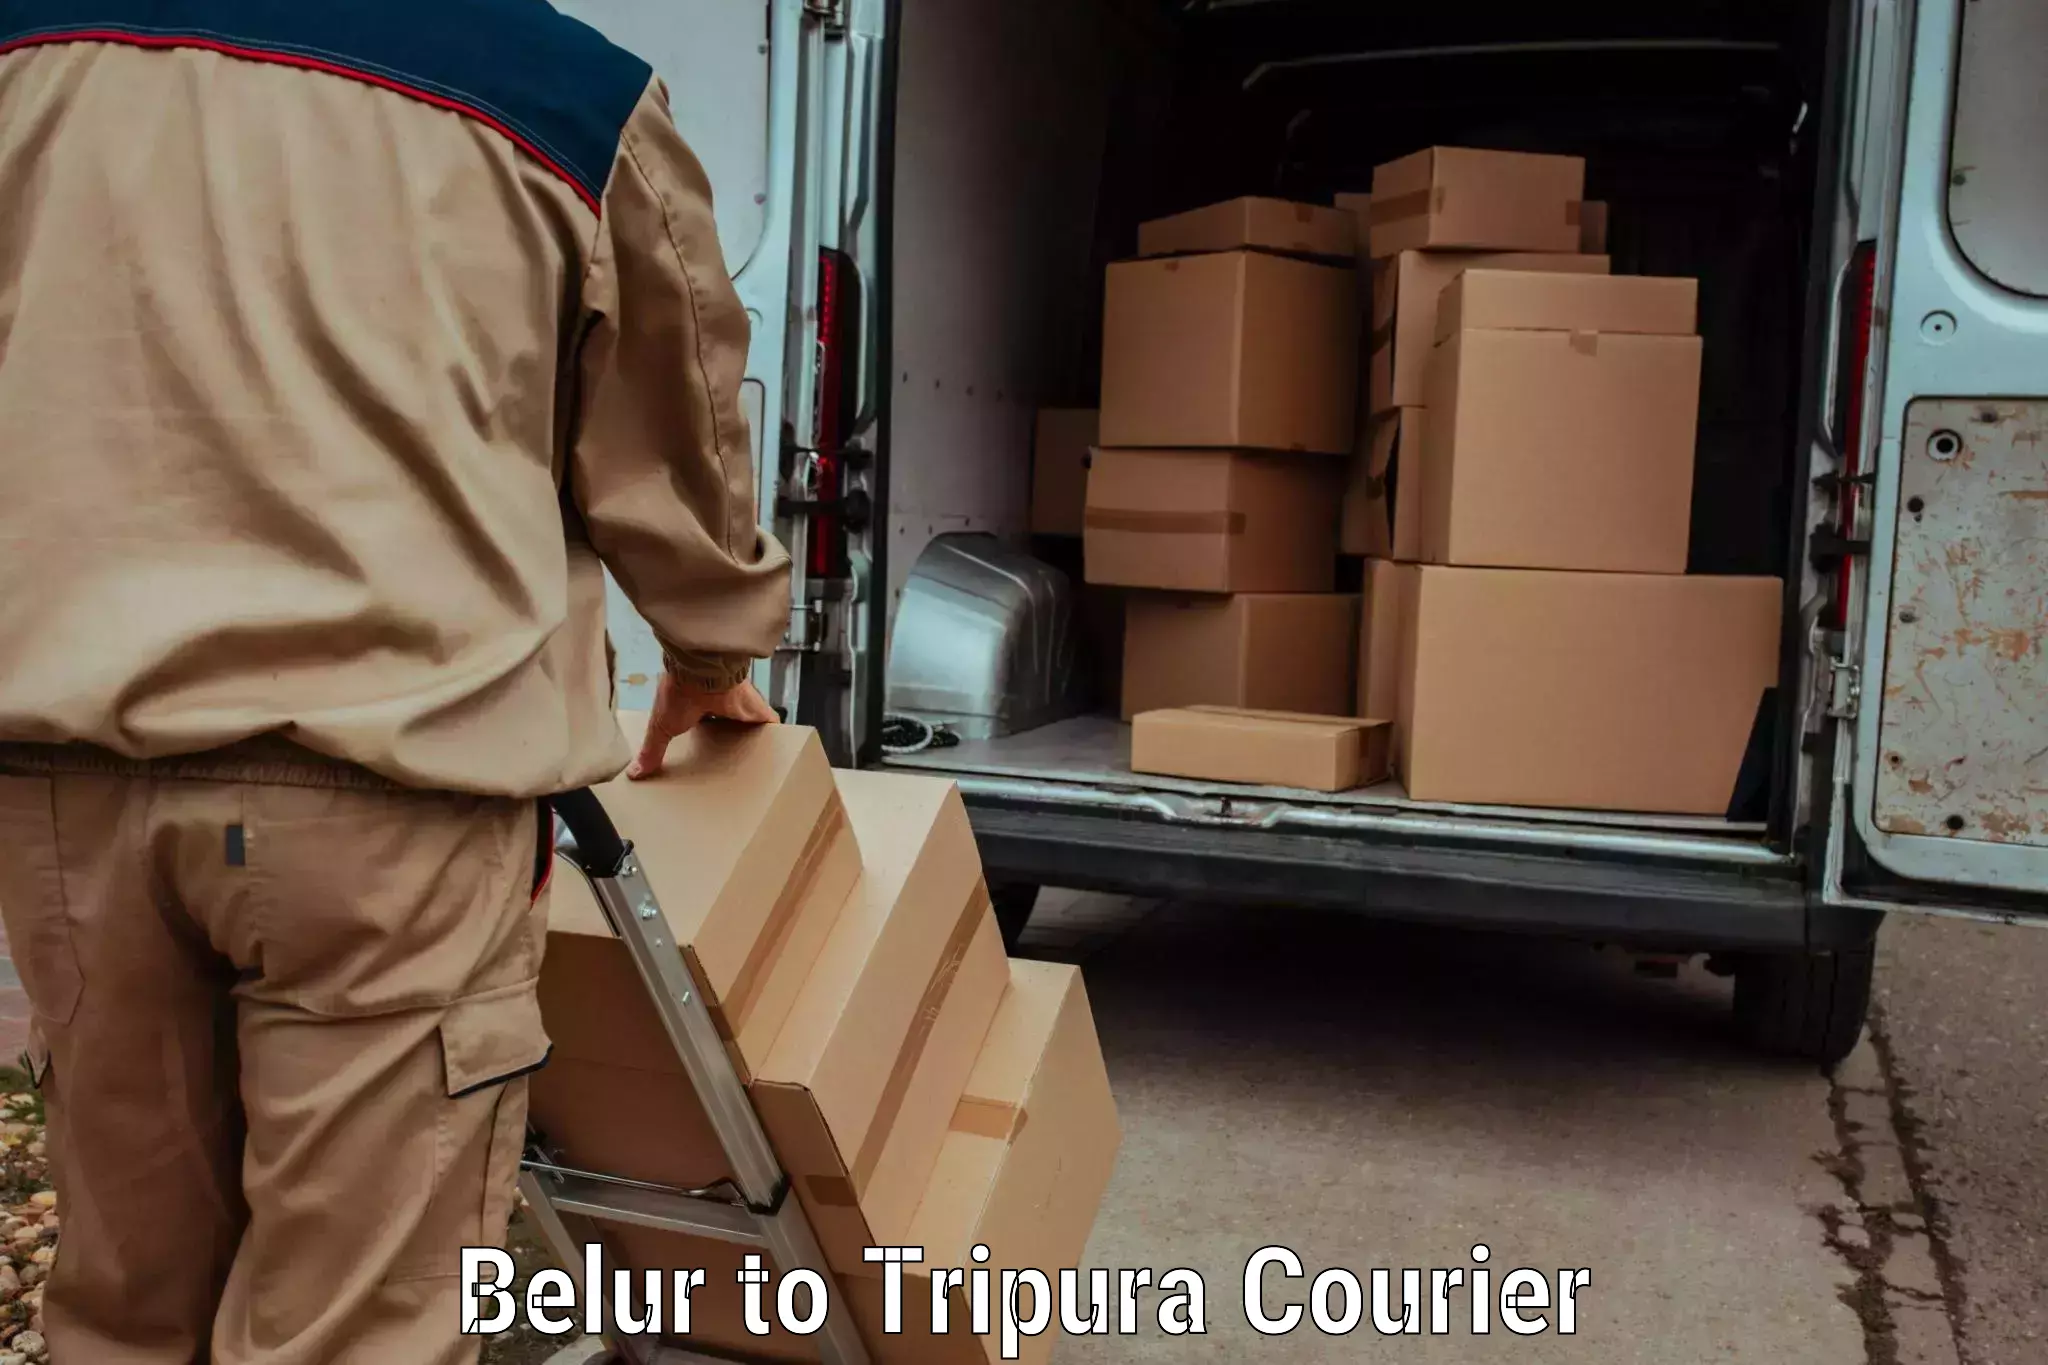 Courier service comparison Belur to Dhalai